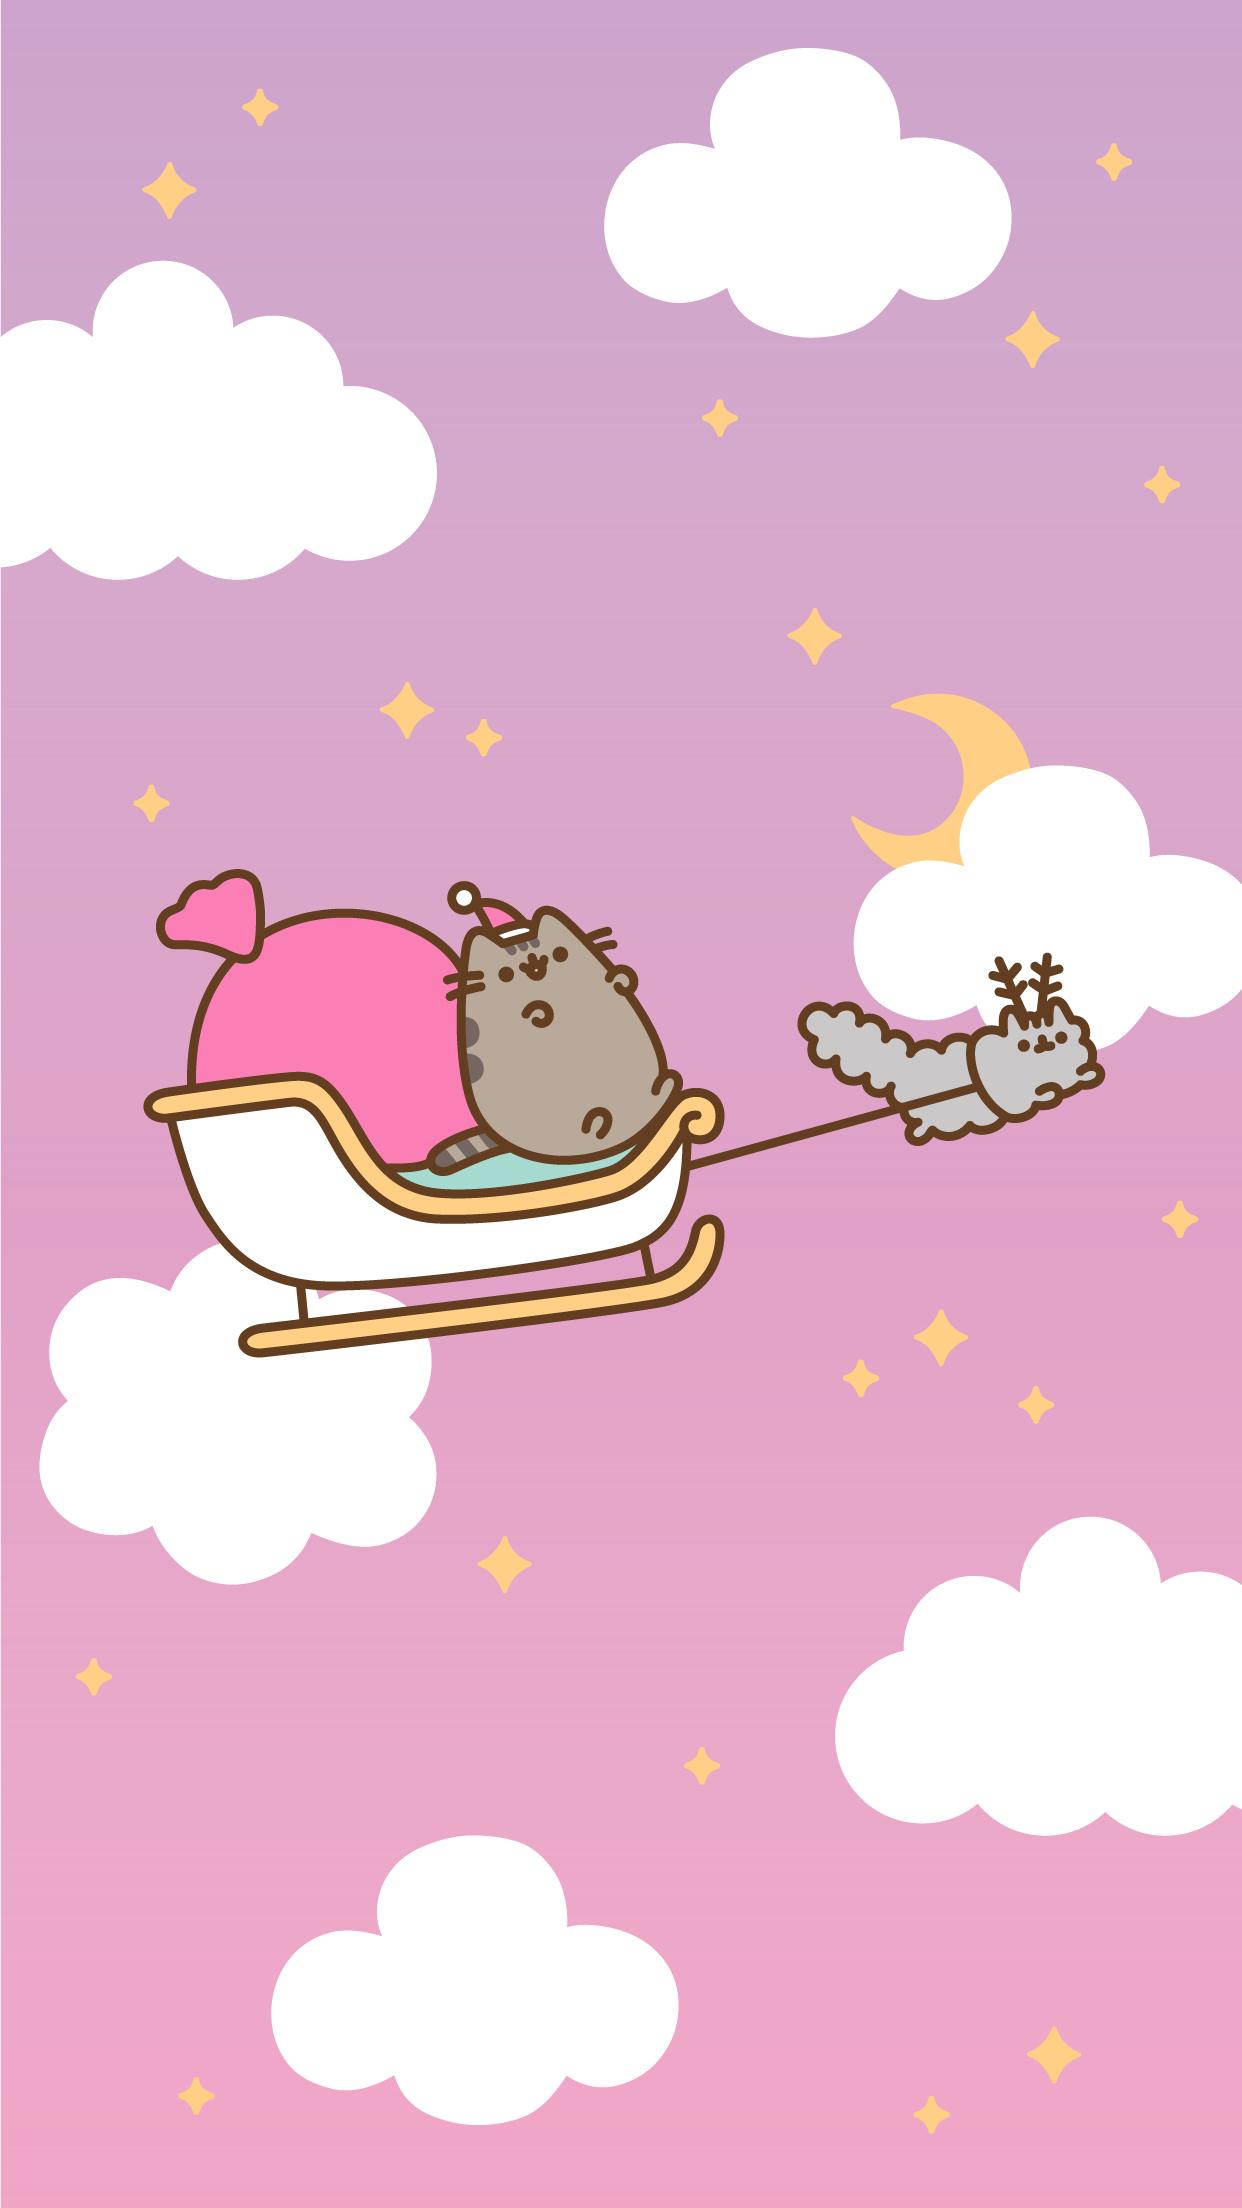 Tải xuống APK Cute Pusheen Cat wallpaper HD cho Android